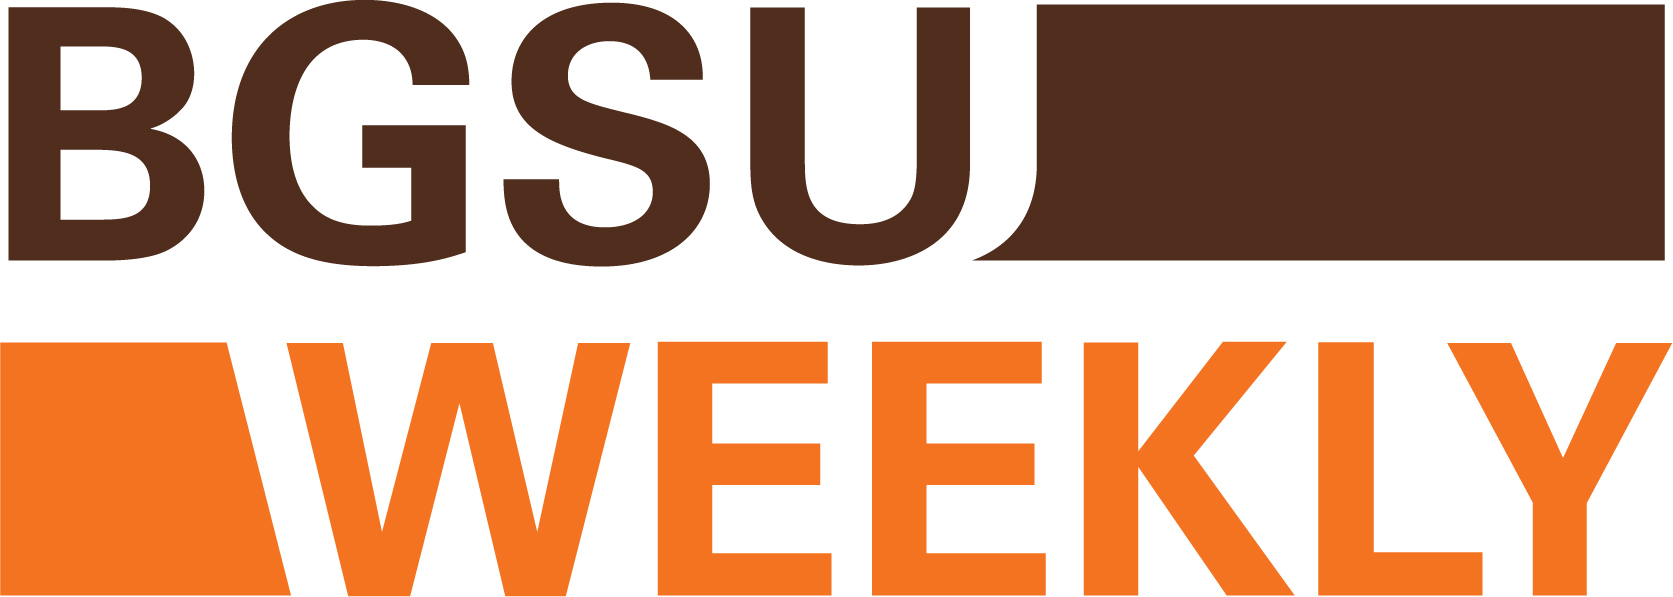 BGSU Weekly logo